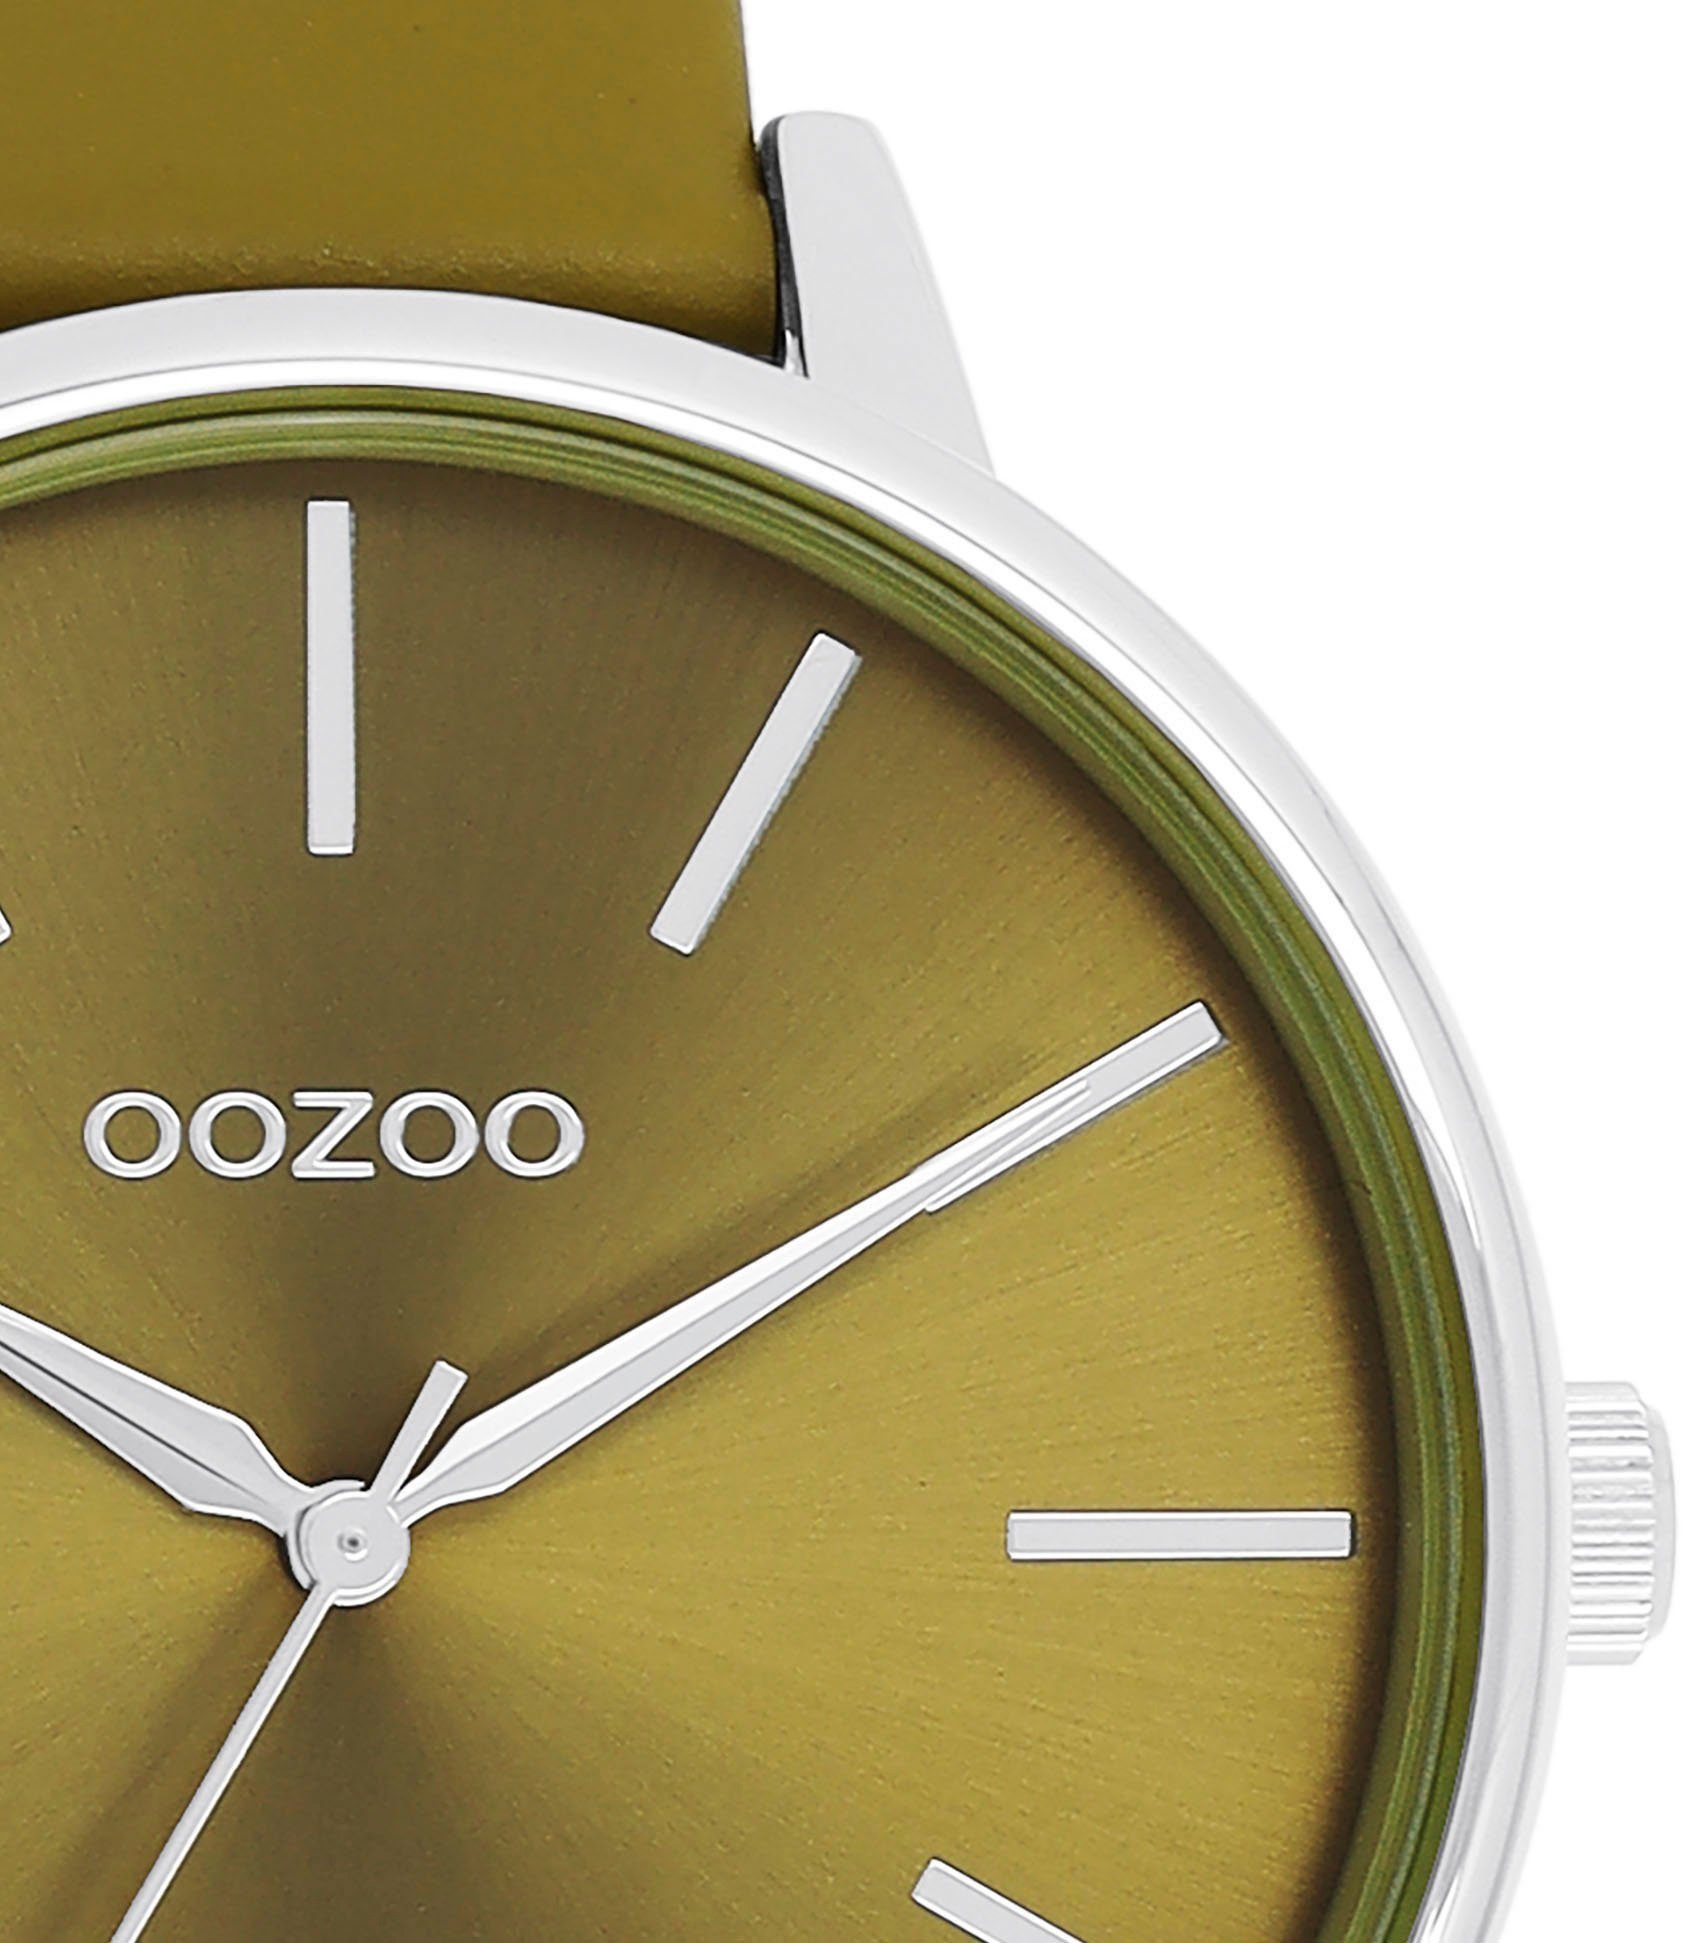 OOZOO Quarzuhr C11298